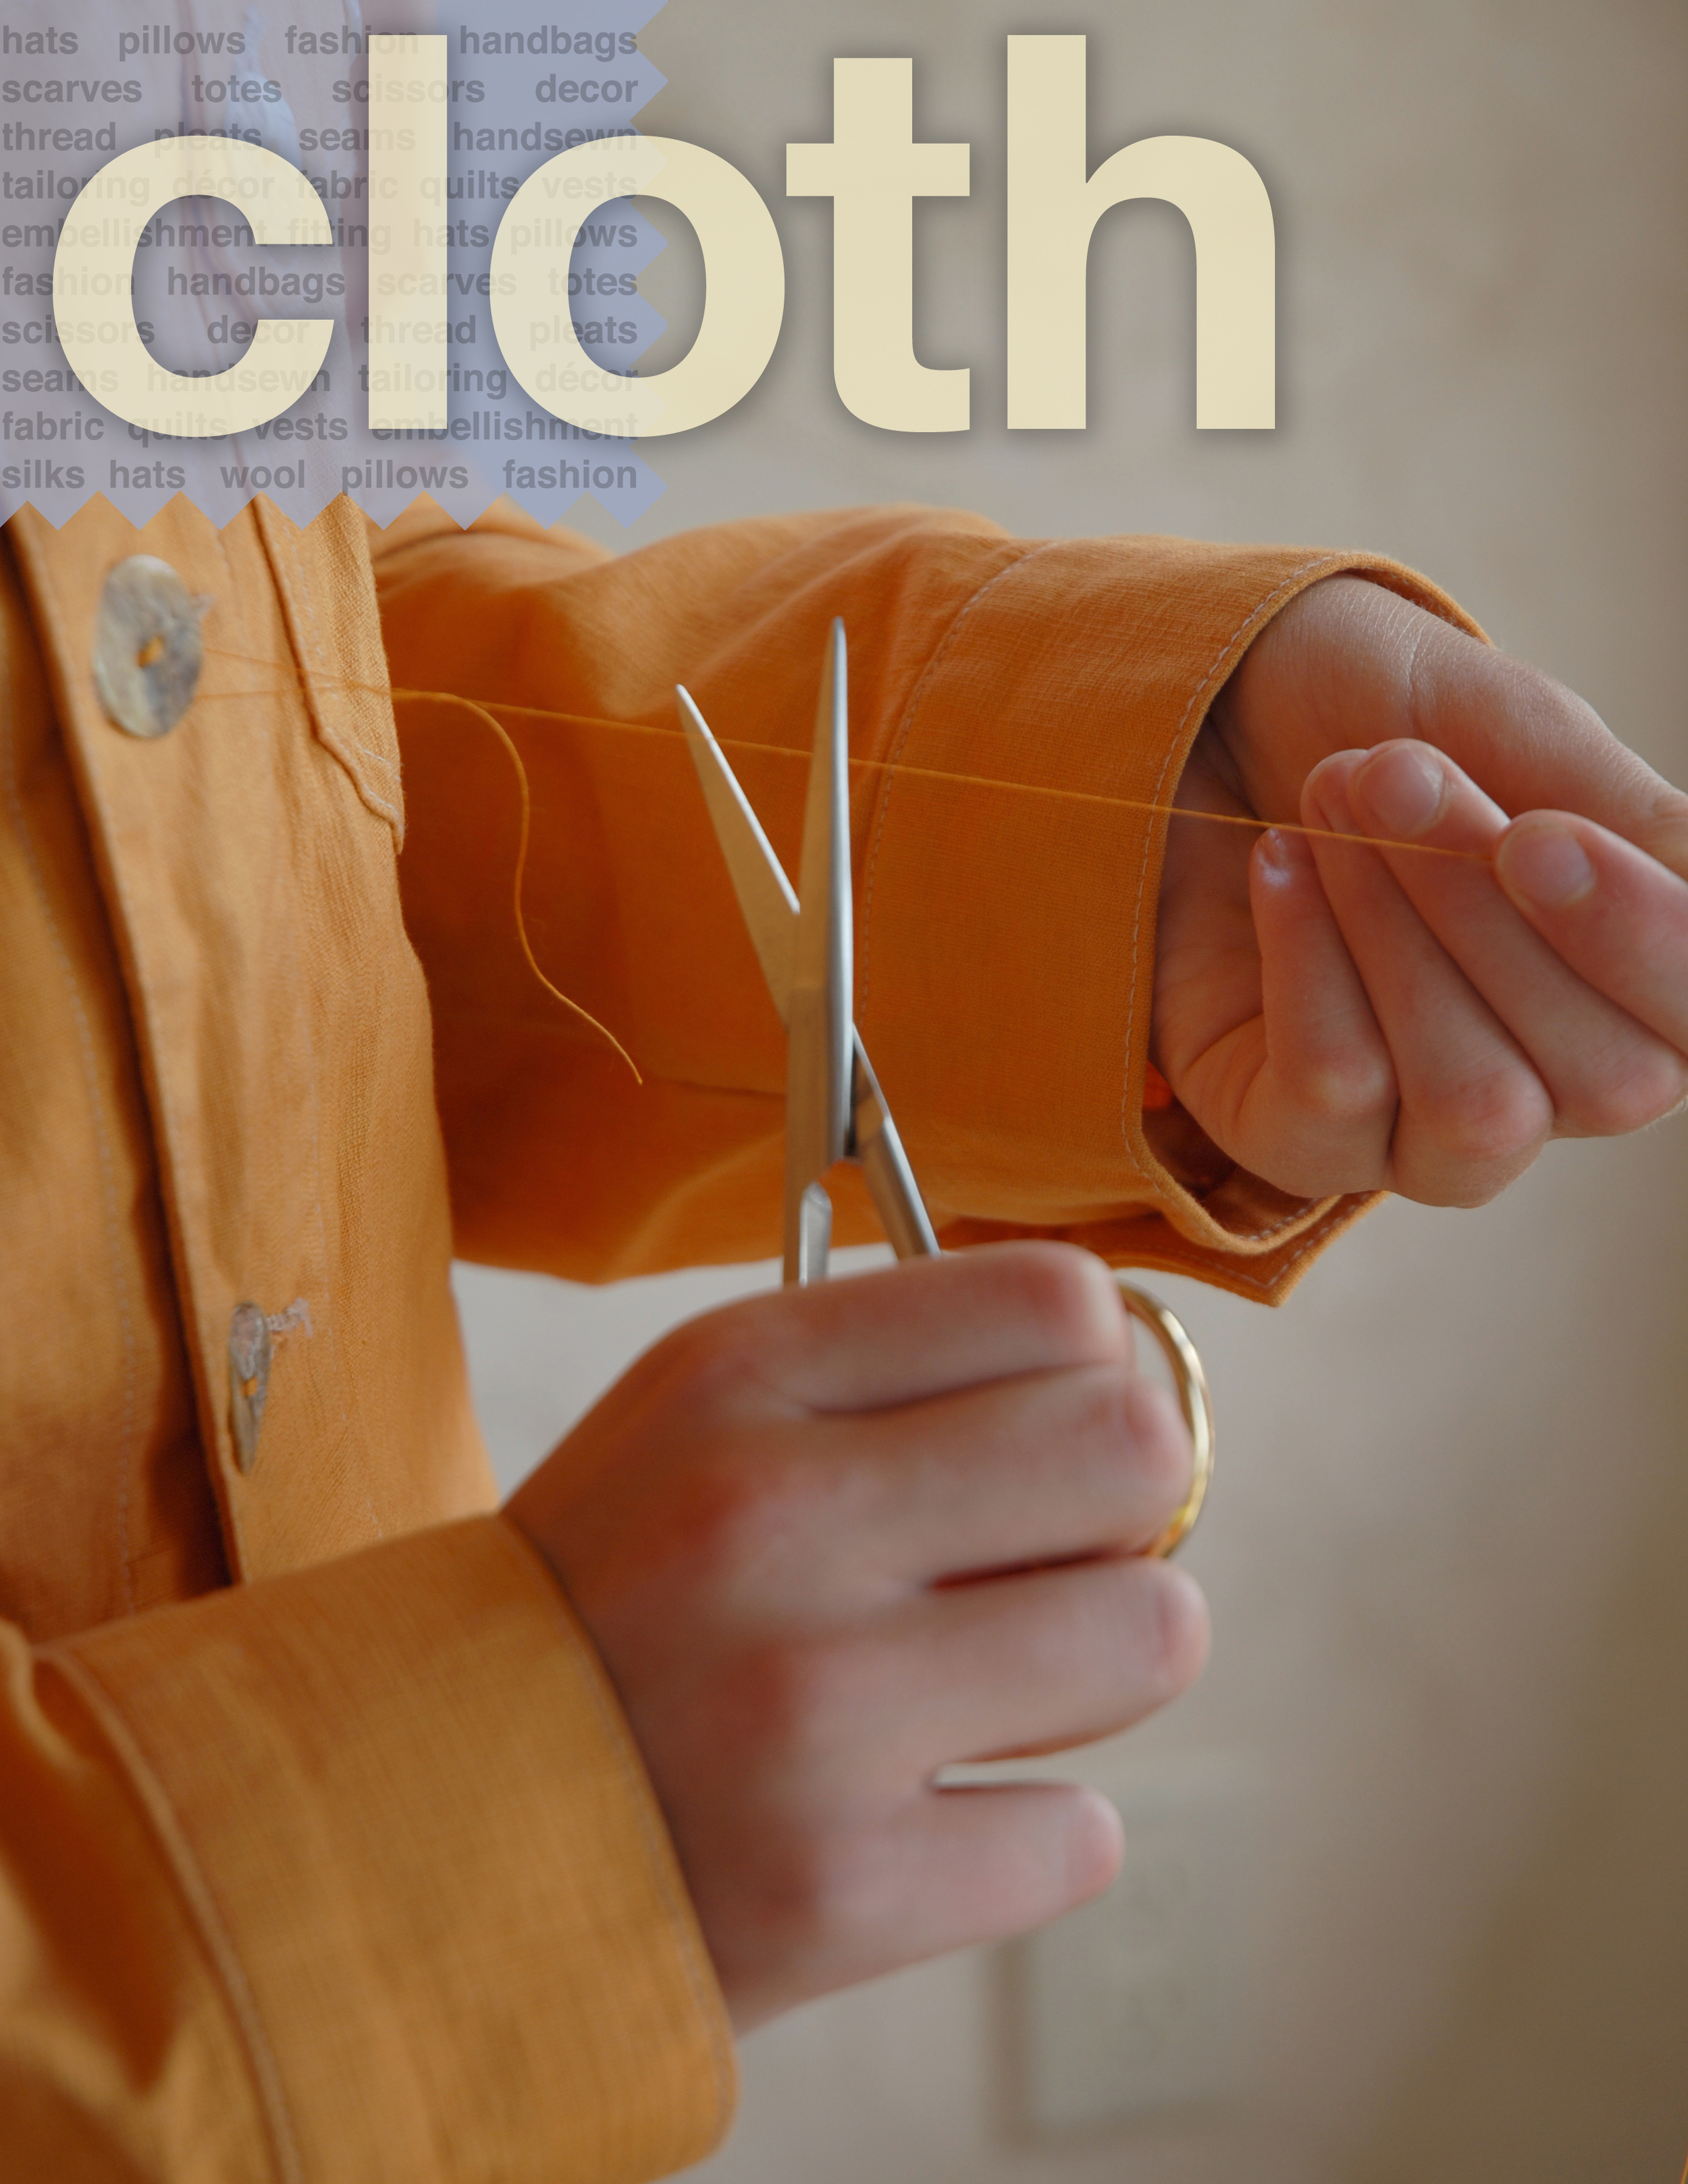 cloth cover cut thread.jpg